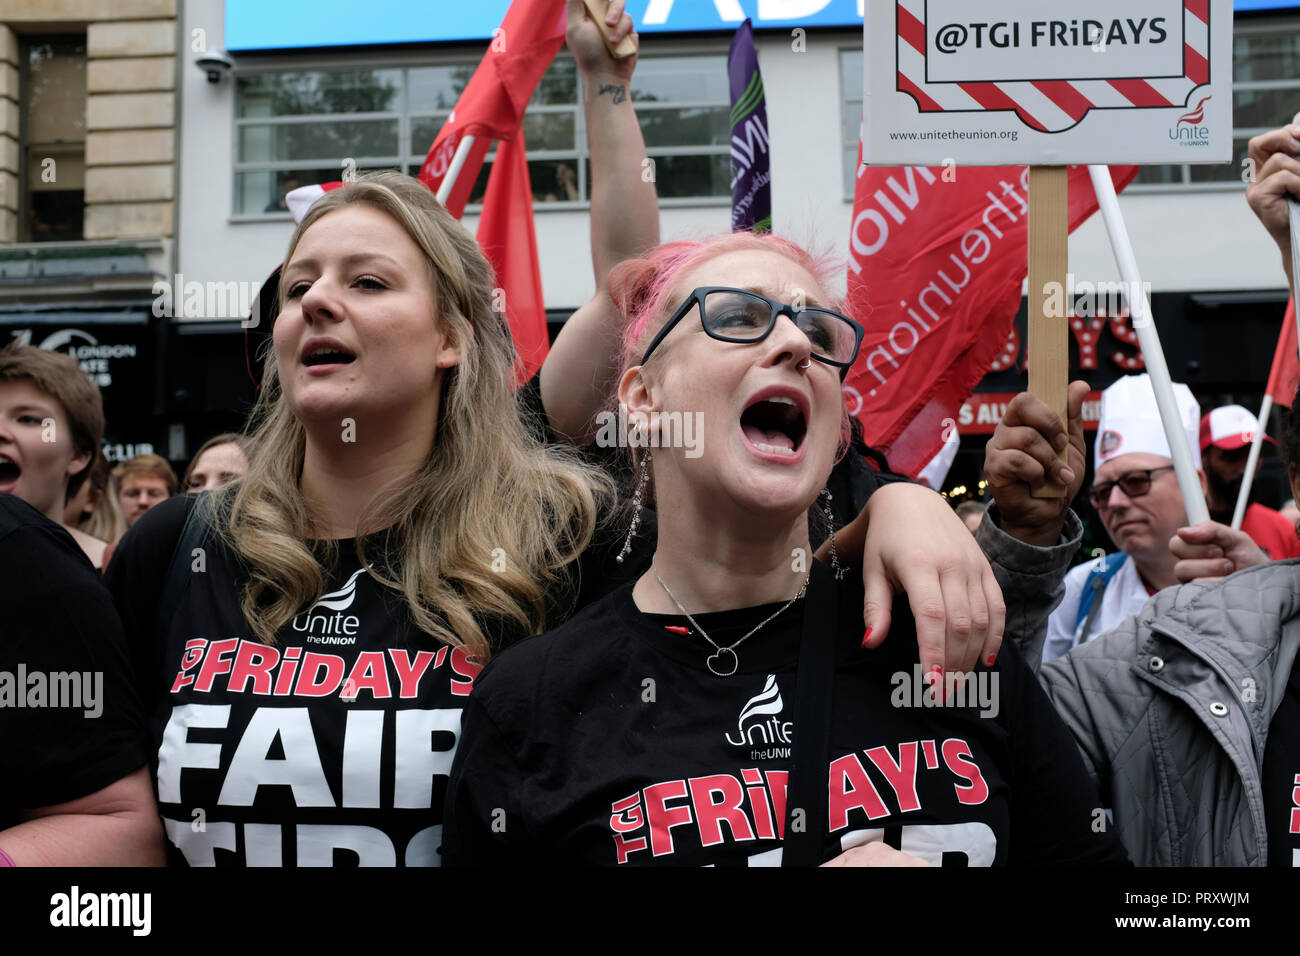 Zwei Frauen gesehen mit schwarzen T-Shirts mit dem TGI Fridays logo bittet um faire Tipps am Arbeitsplatz während der Demonstration. Wetherspoons, TGI Fridays, und McDonald's Arbeiter Kundgebung zusammen in London, bessere Arbeitsbedingungen und eine angemessene Bezahlung in der Hotellerie zu verlangen. Stockfoto